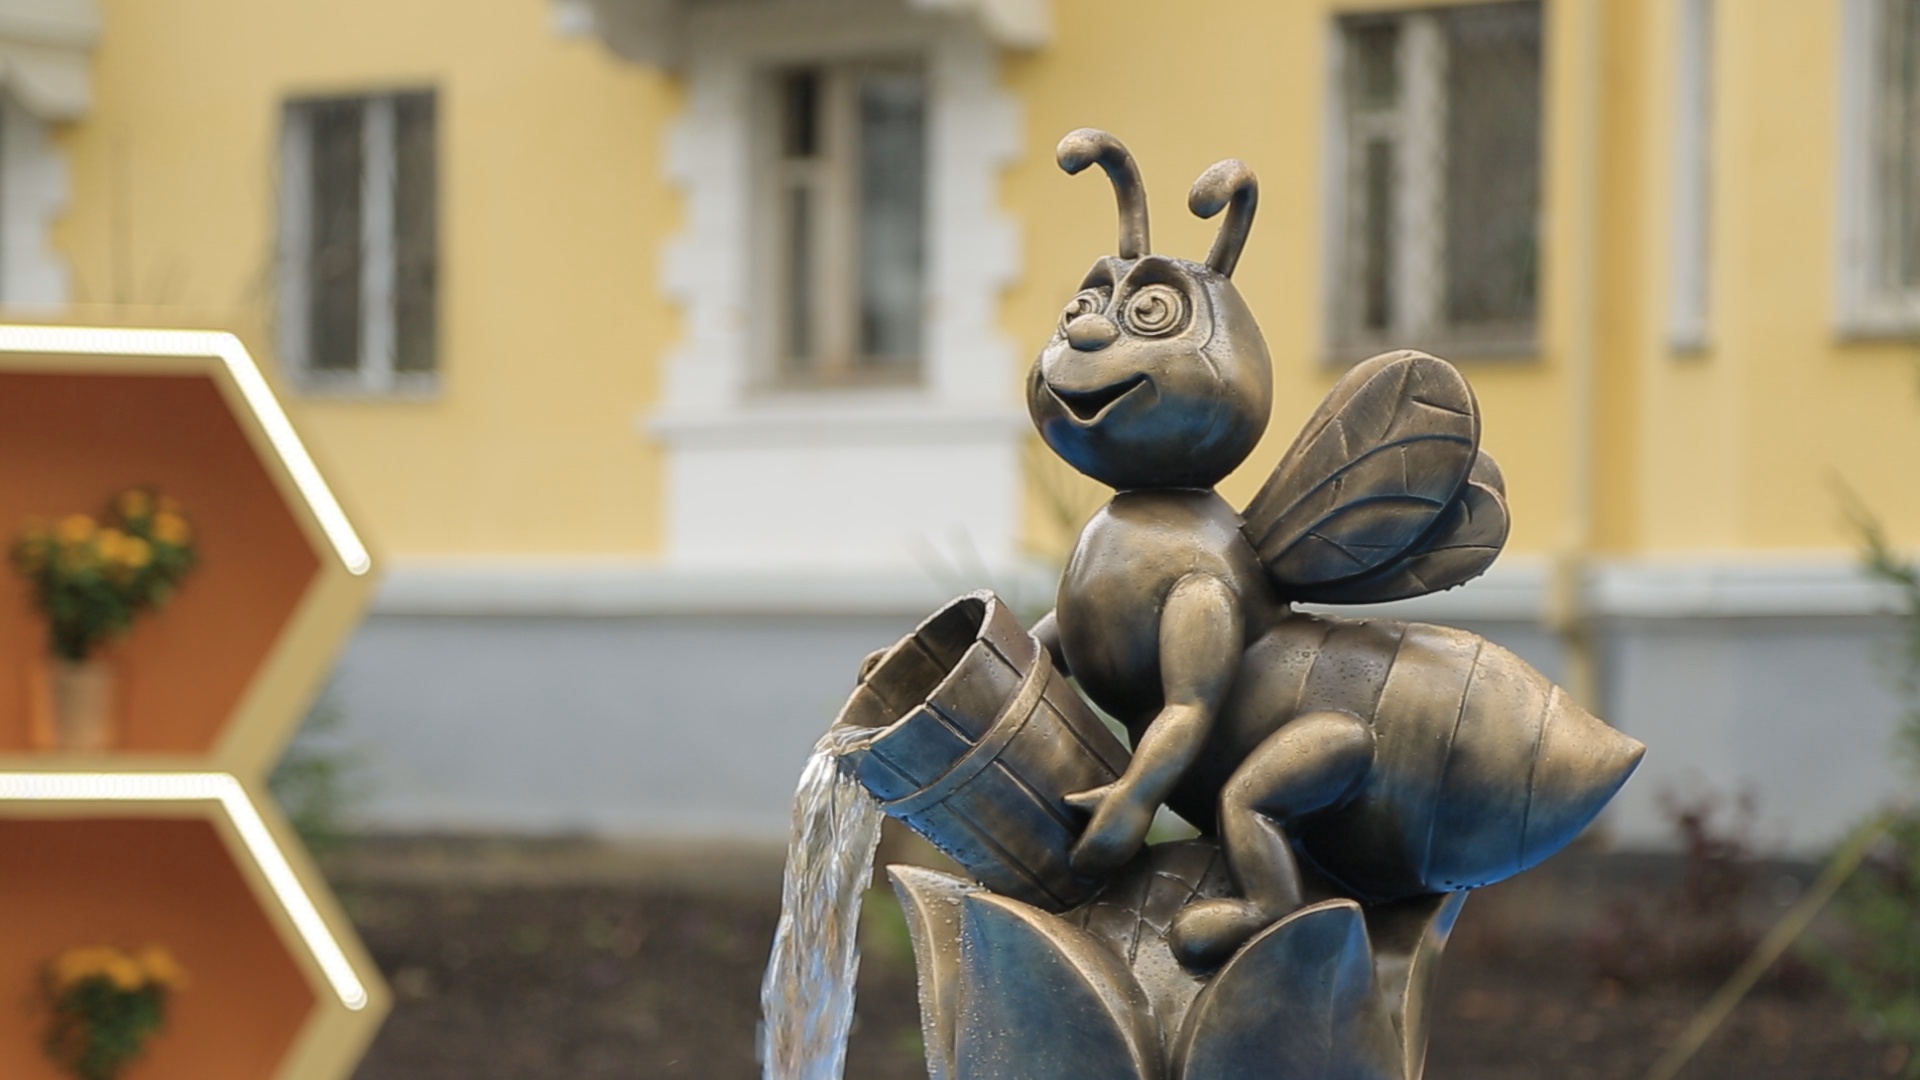 Министр ЖКХ Башкирии пообещал устроить «сюрприз» школьнику, сломавшему скульптуру пчелы в Уфе